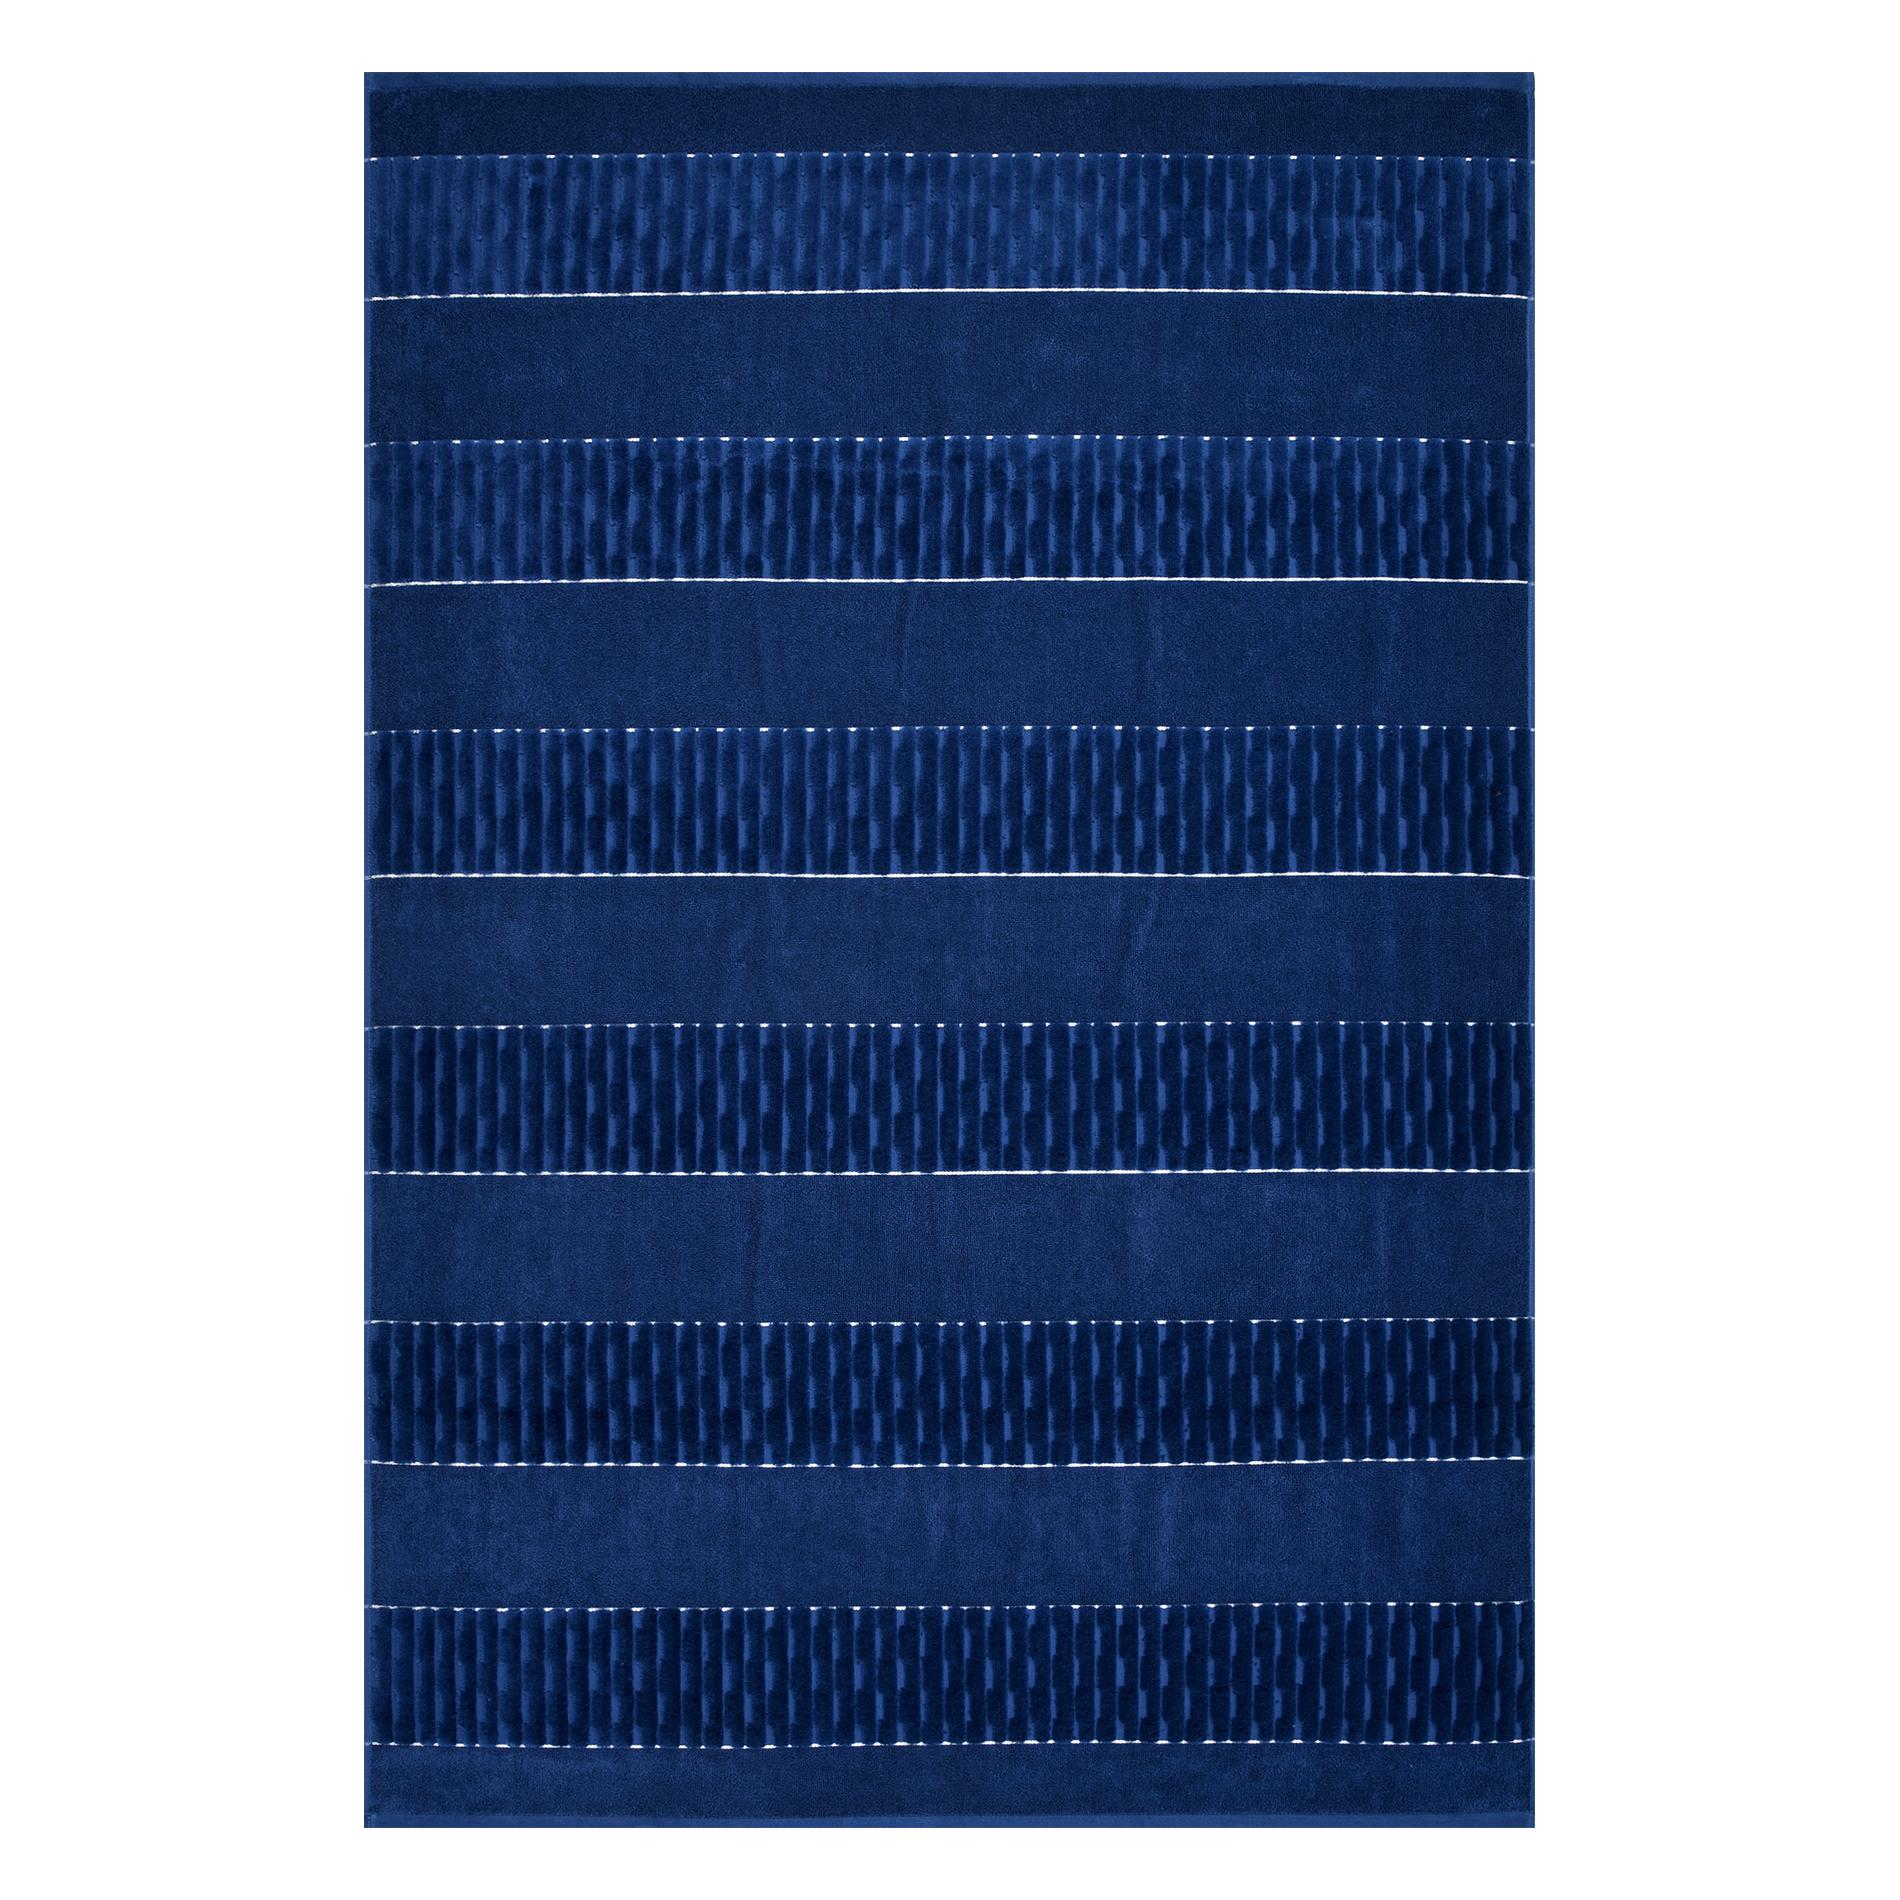 Махровое полотенце Cleanelly Esteta синее 100х150 см полотенце классик темно синий р 50х90